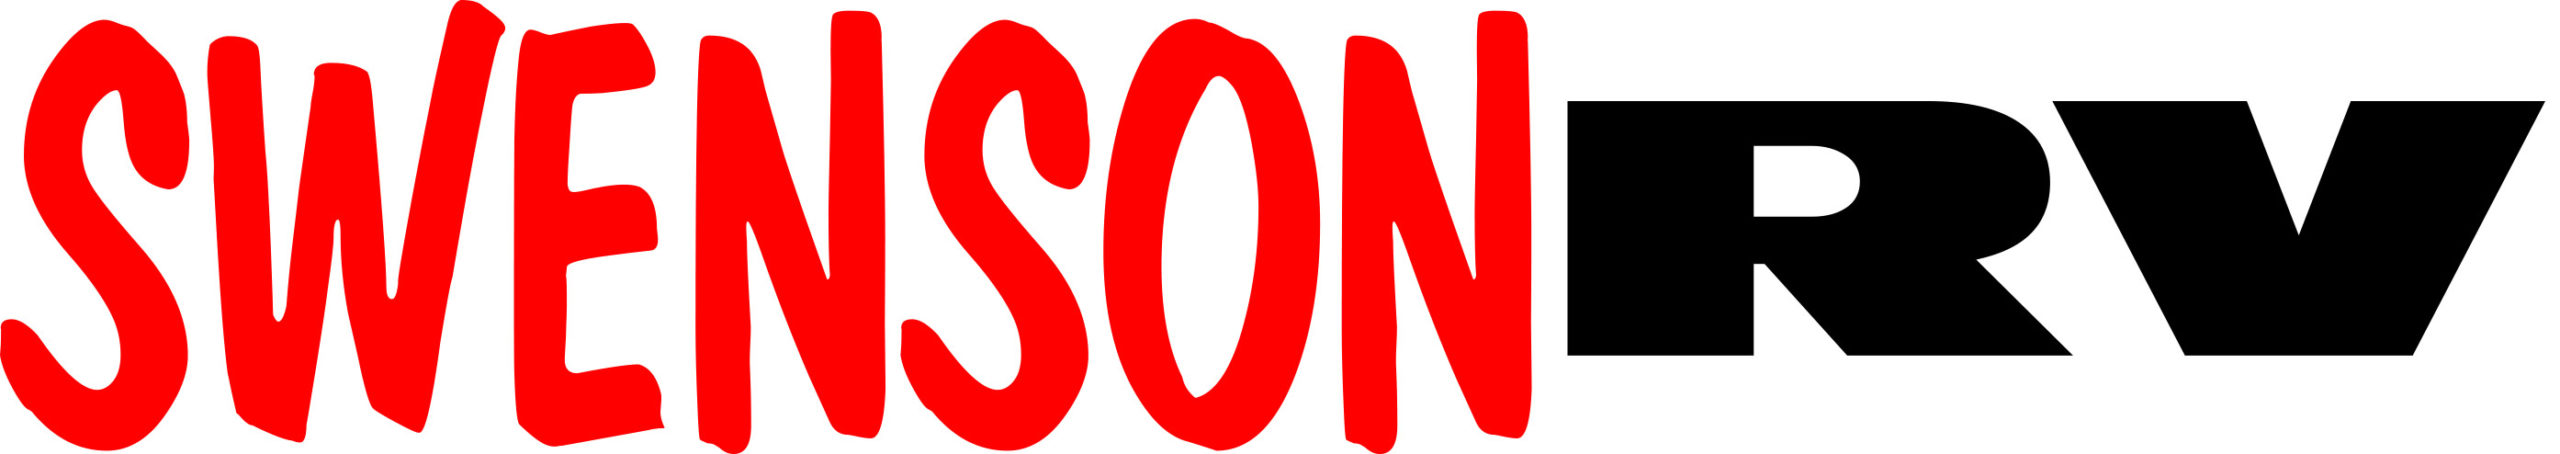 Swenson Rv Logo